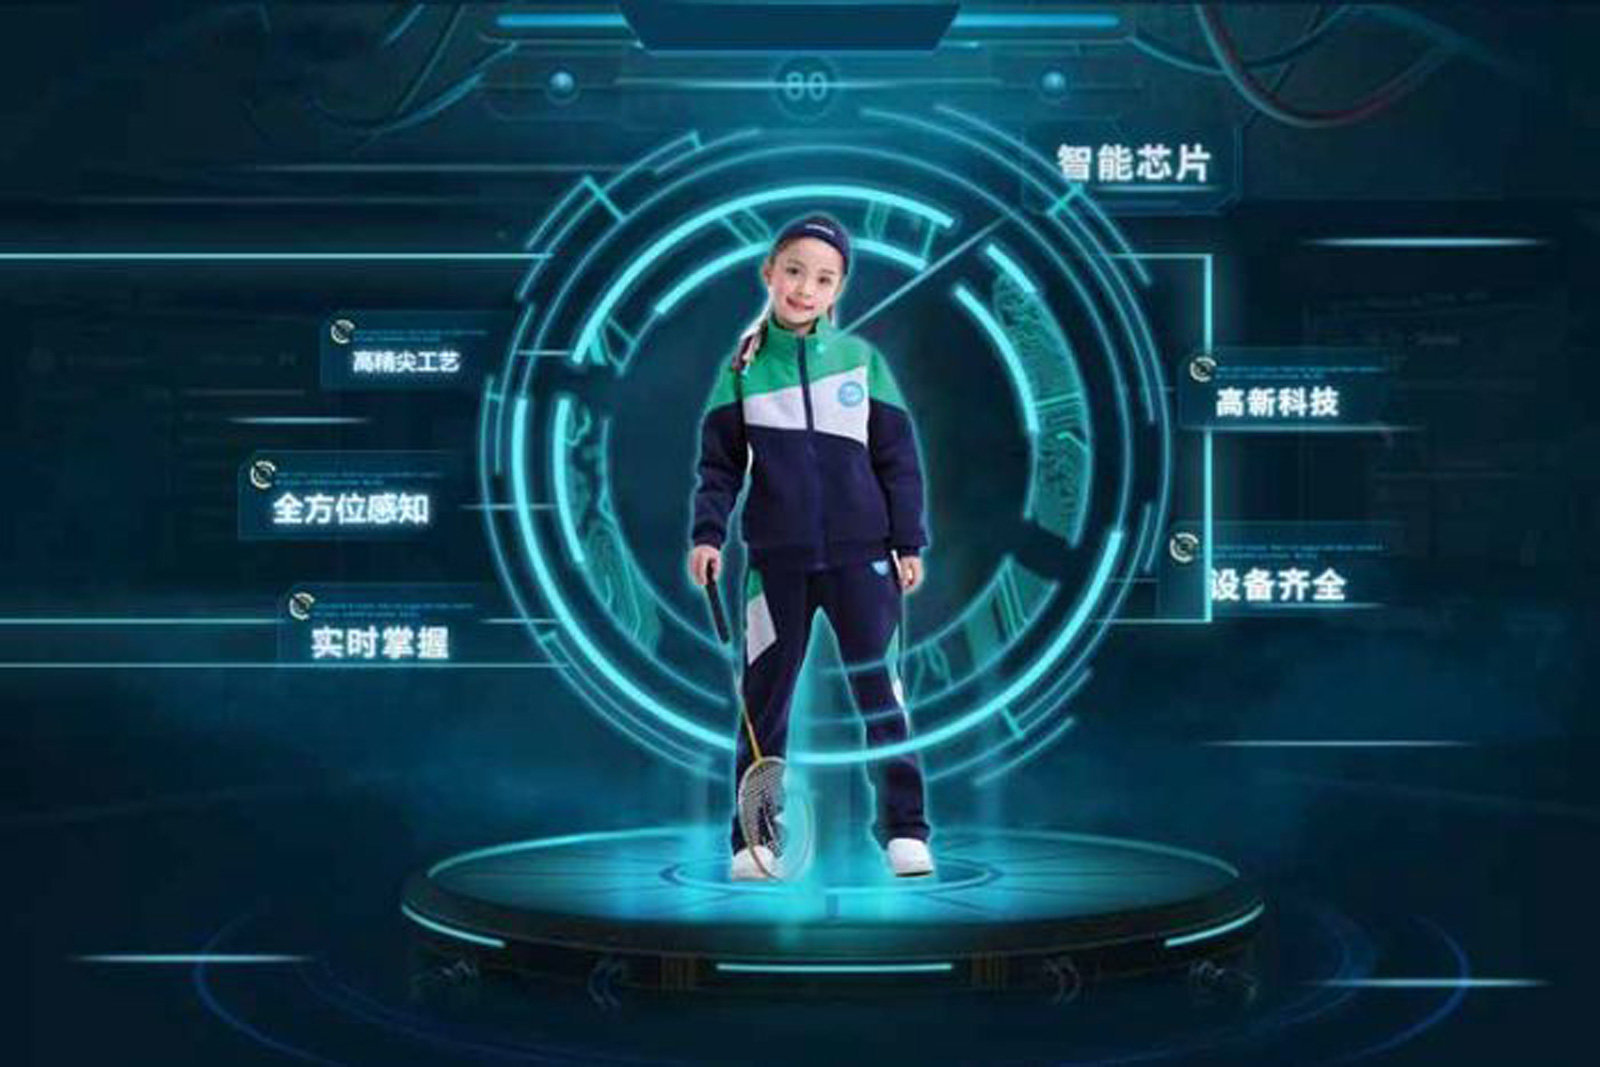 พี่จีนเอาจริงทดลอง "ชุดยูนิฟอร์มอัจฉริยะ" มอนิเตอร์ทุกย่างก้าวกันเด็กโดดเรียน